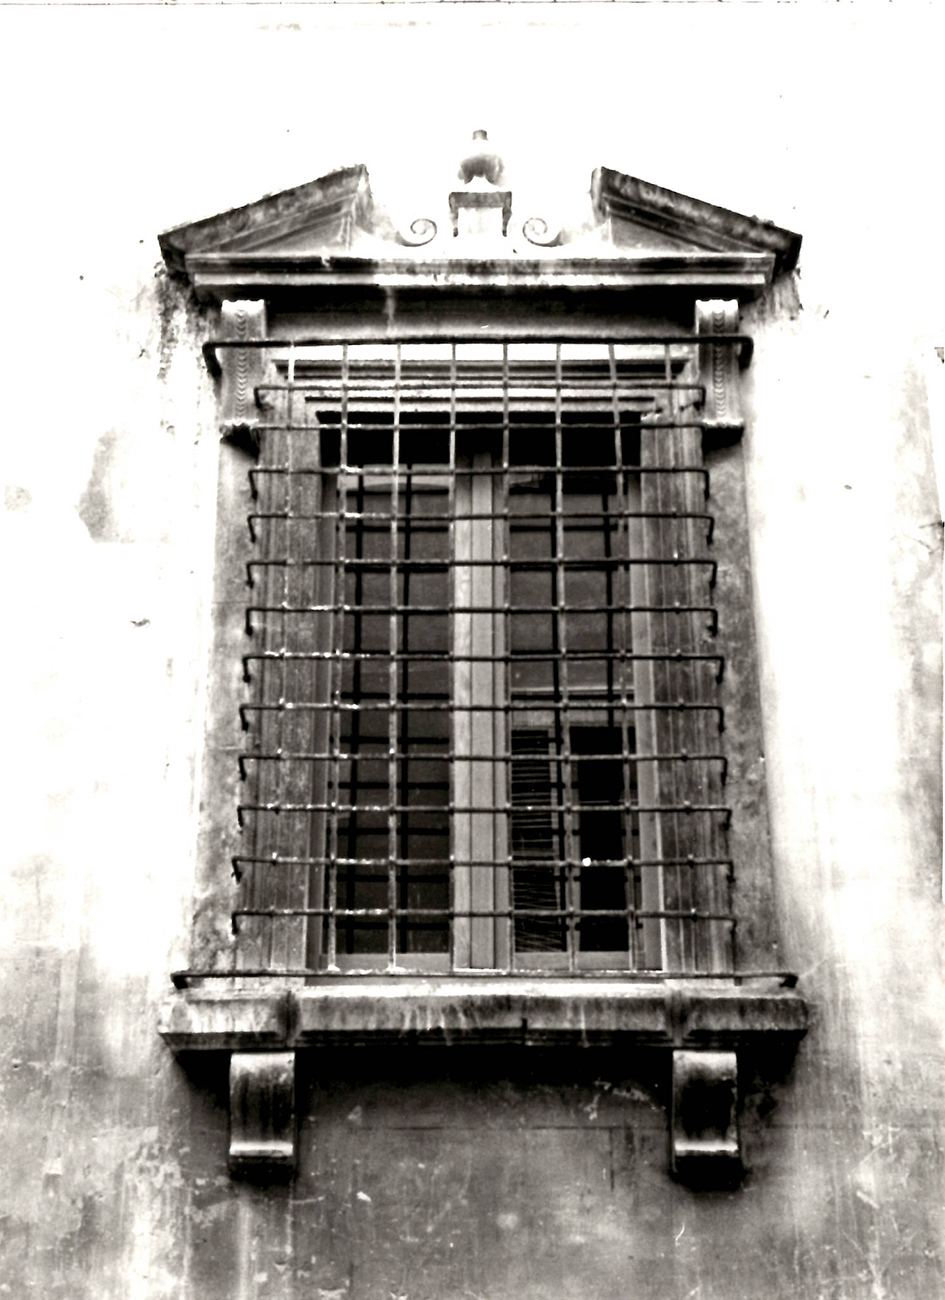 Palazzo Tacchi Venturi (palazzo, signorile) - San Severino Marche (MC) 